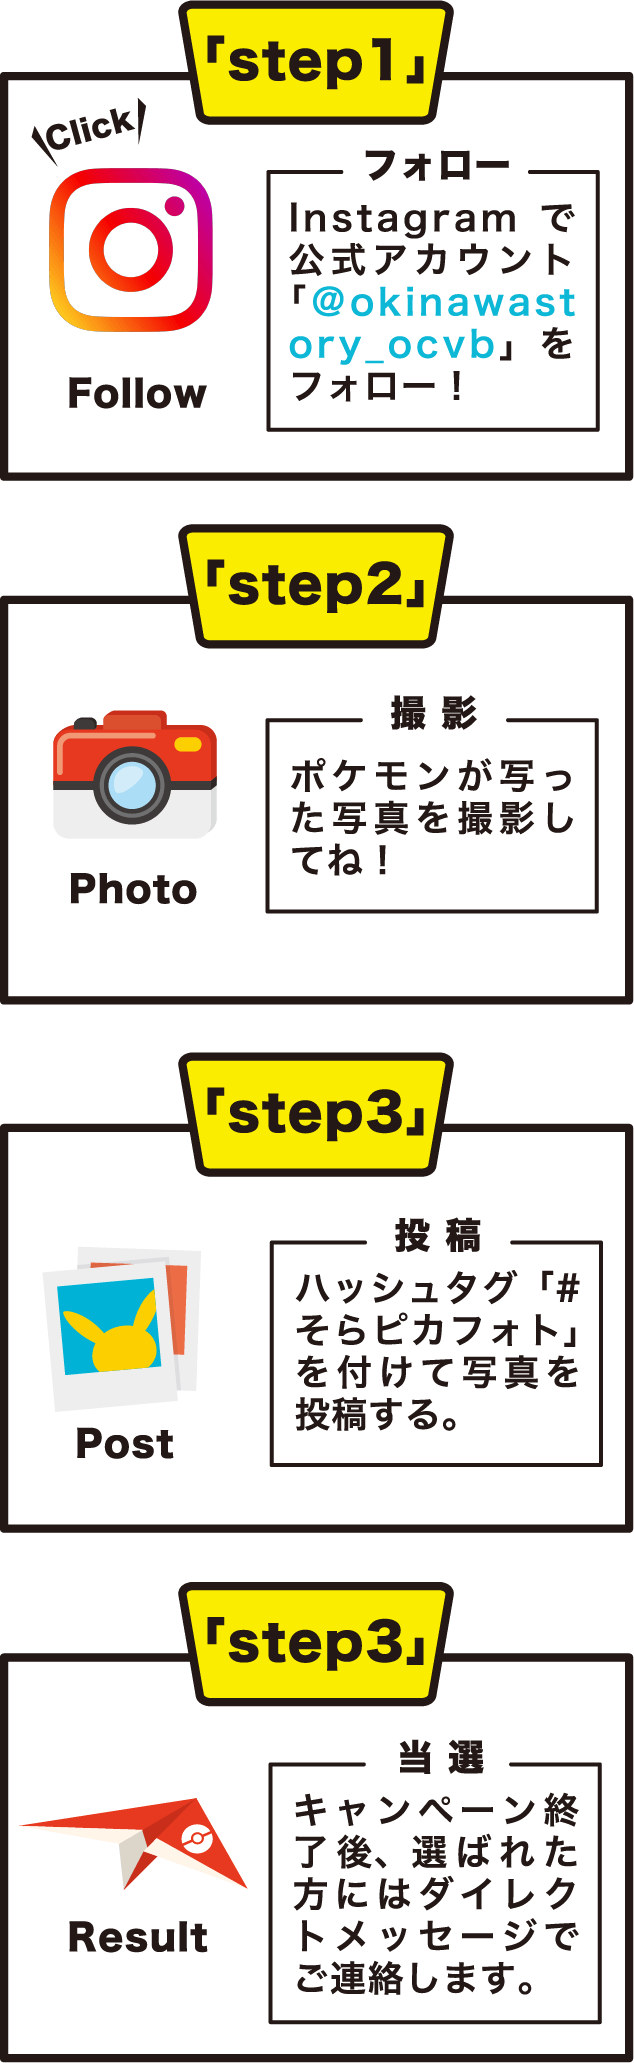 step1 フォロー：Instagramで公式アカウント「＠okinawastory_ocvb」をフォロー！ step2 撮 影:ポケモンが写った写真を撮影してね！ step3 投 稿:ハッシュタグ「#そらピカフォト」を付けて写真を投稿する。 step4 当 選:キャンペーン終了後、選ばれた方にはダイレクトメッセージでご連絡します。